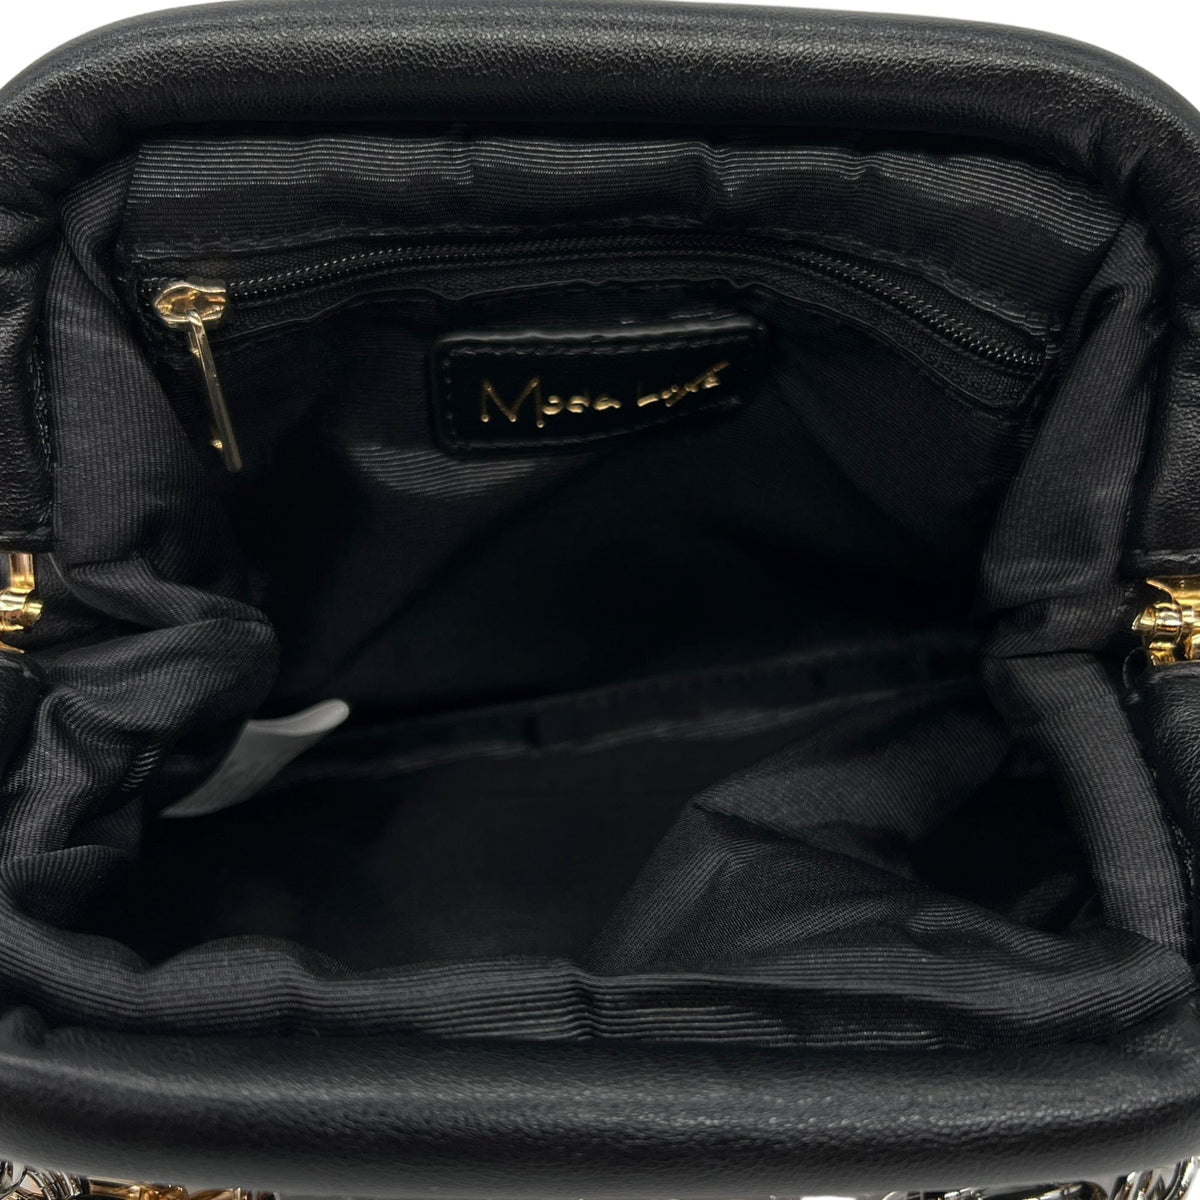 DKNY Leather Camera Crossbody - Black– Wag N' Purr Shop